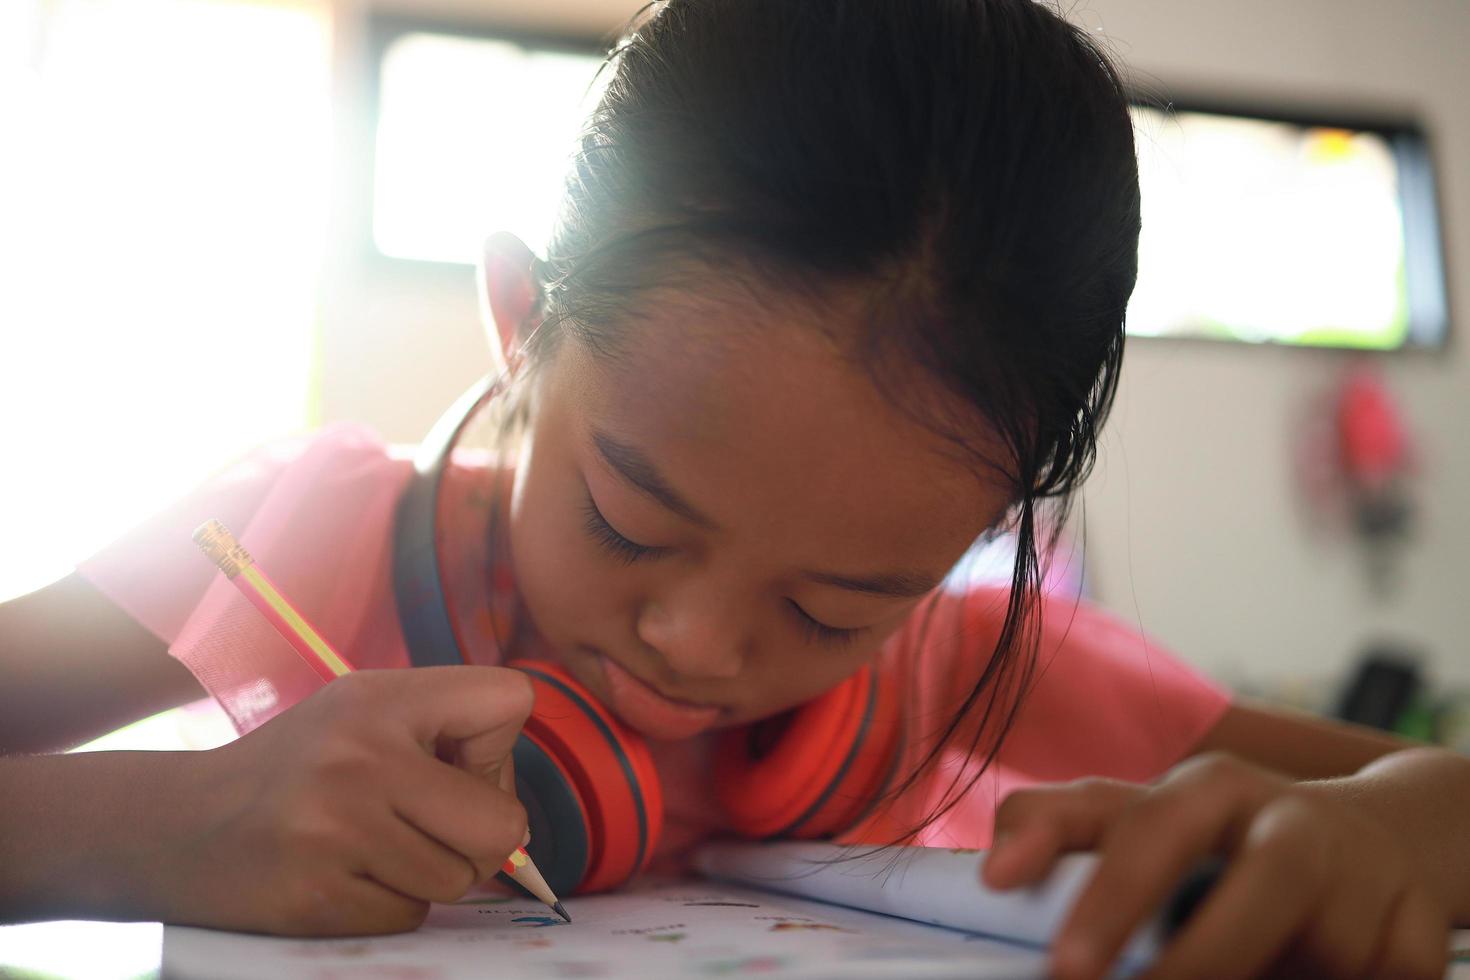 uma linda garota asiática fazendo lição de casa em sua casa durante o dia foto